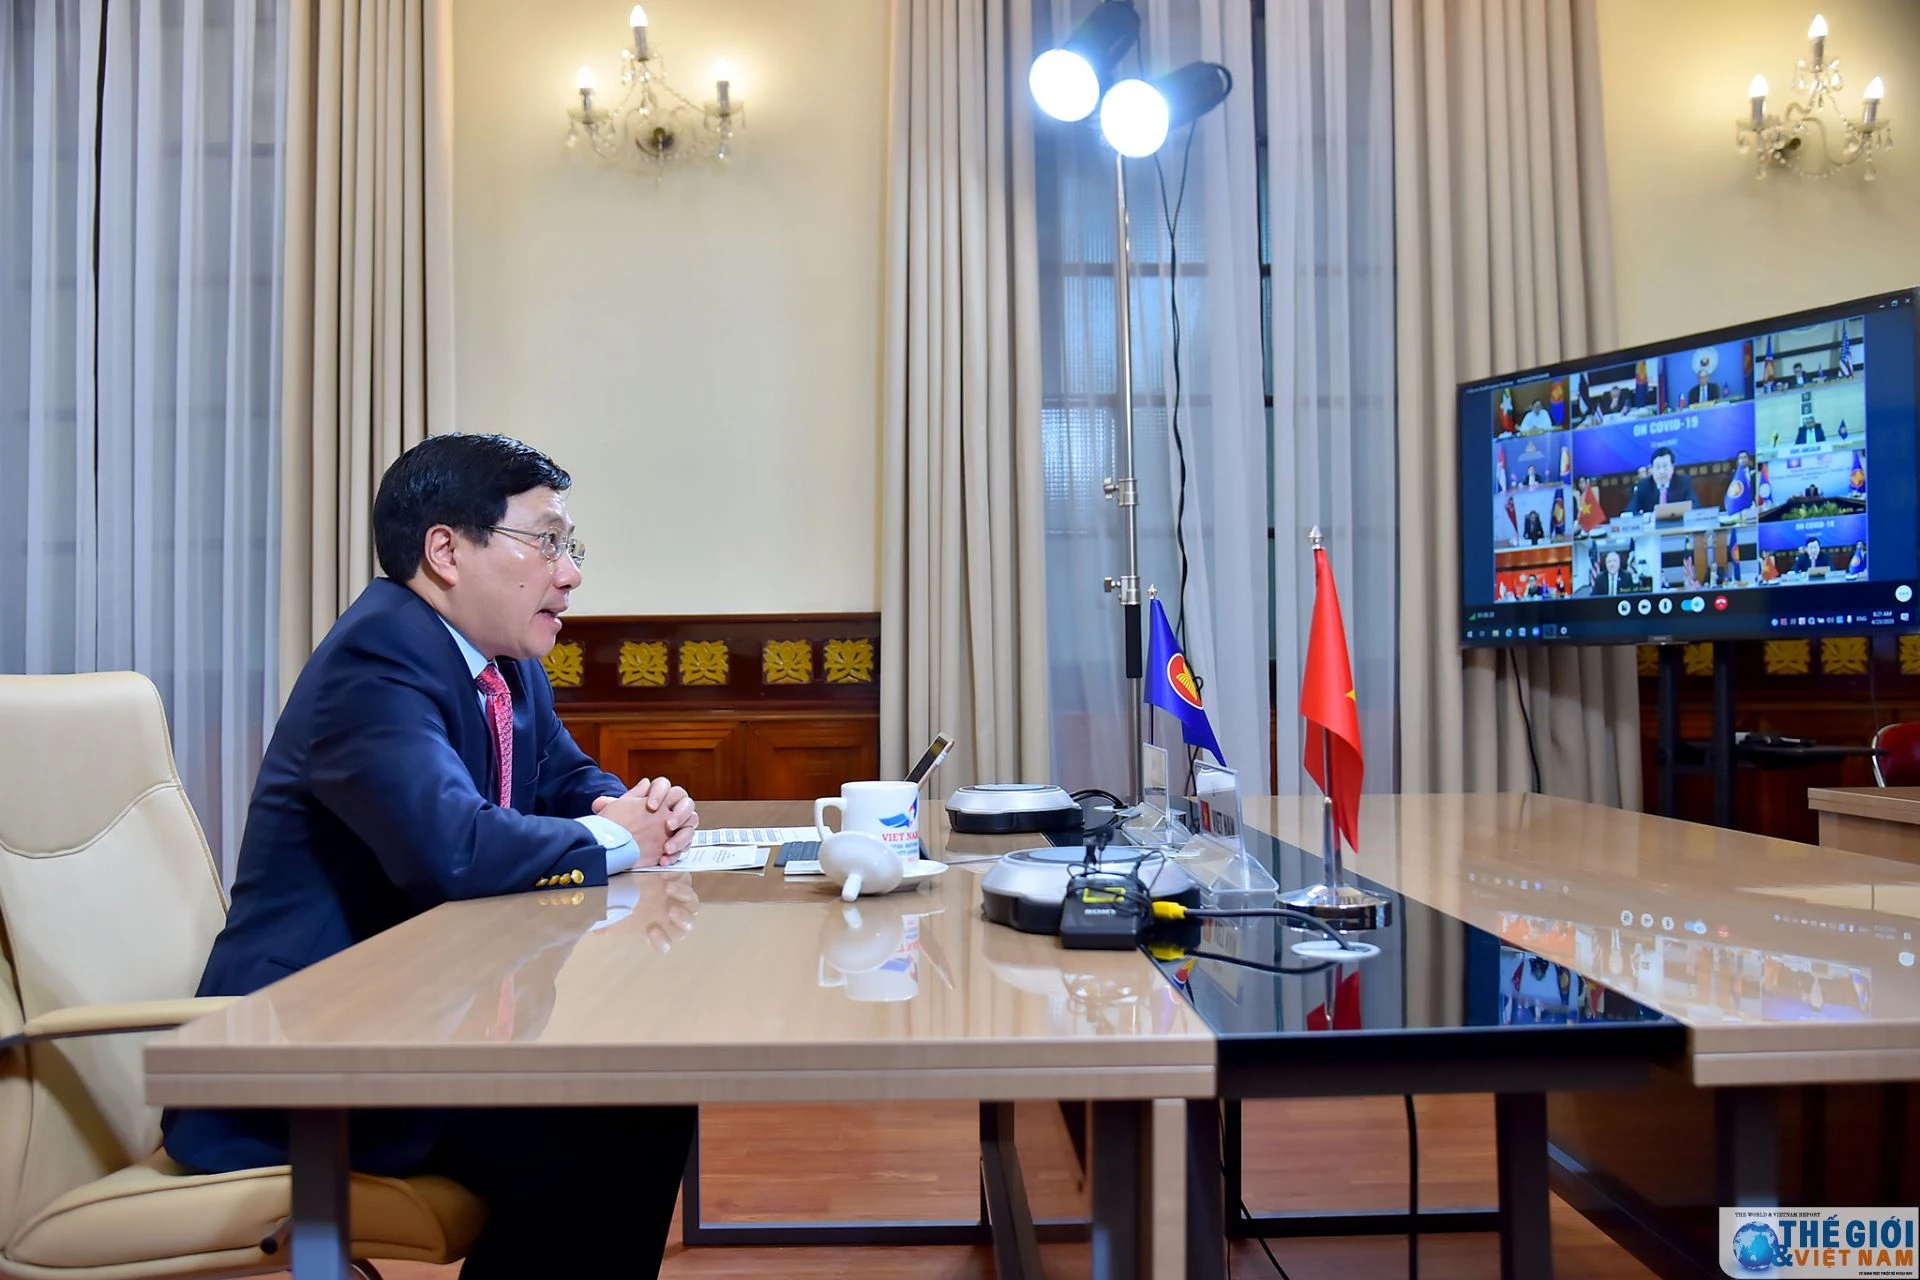 Phó Thủ tướng, Bộ trưởng Bộ Ngoại giao Phạm Bình Minh phát biểu tại Hội nghị trực tuyến đặc biệt cấp Bộ trưởng Ngoại giao ASEAN - Hoa Kỳ về ứng phó dịch bệnh COVID-19. 